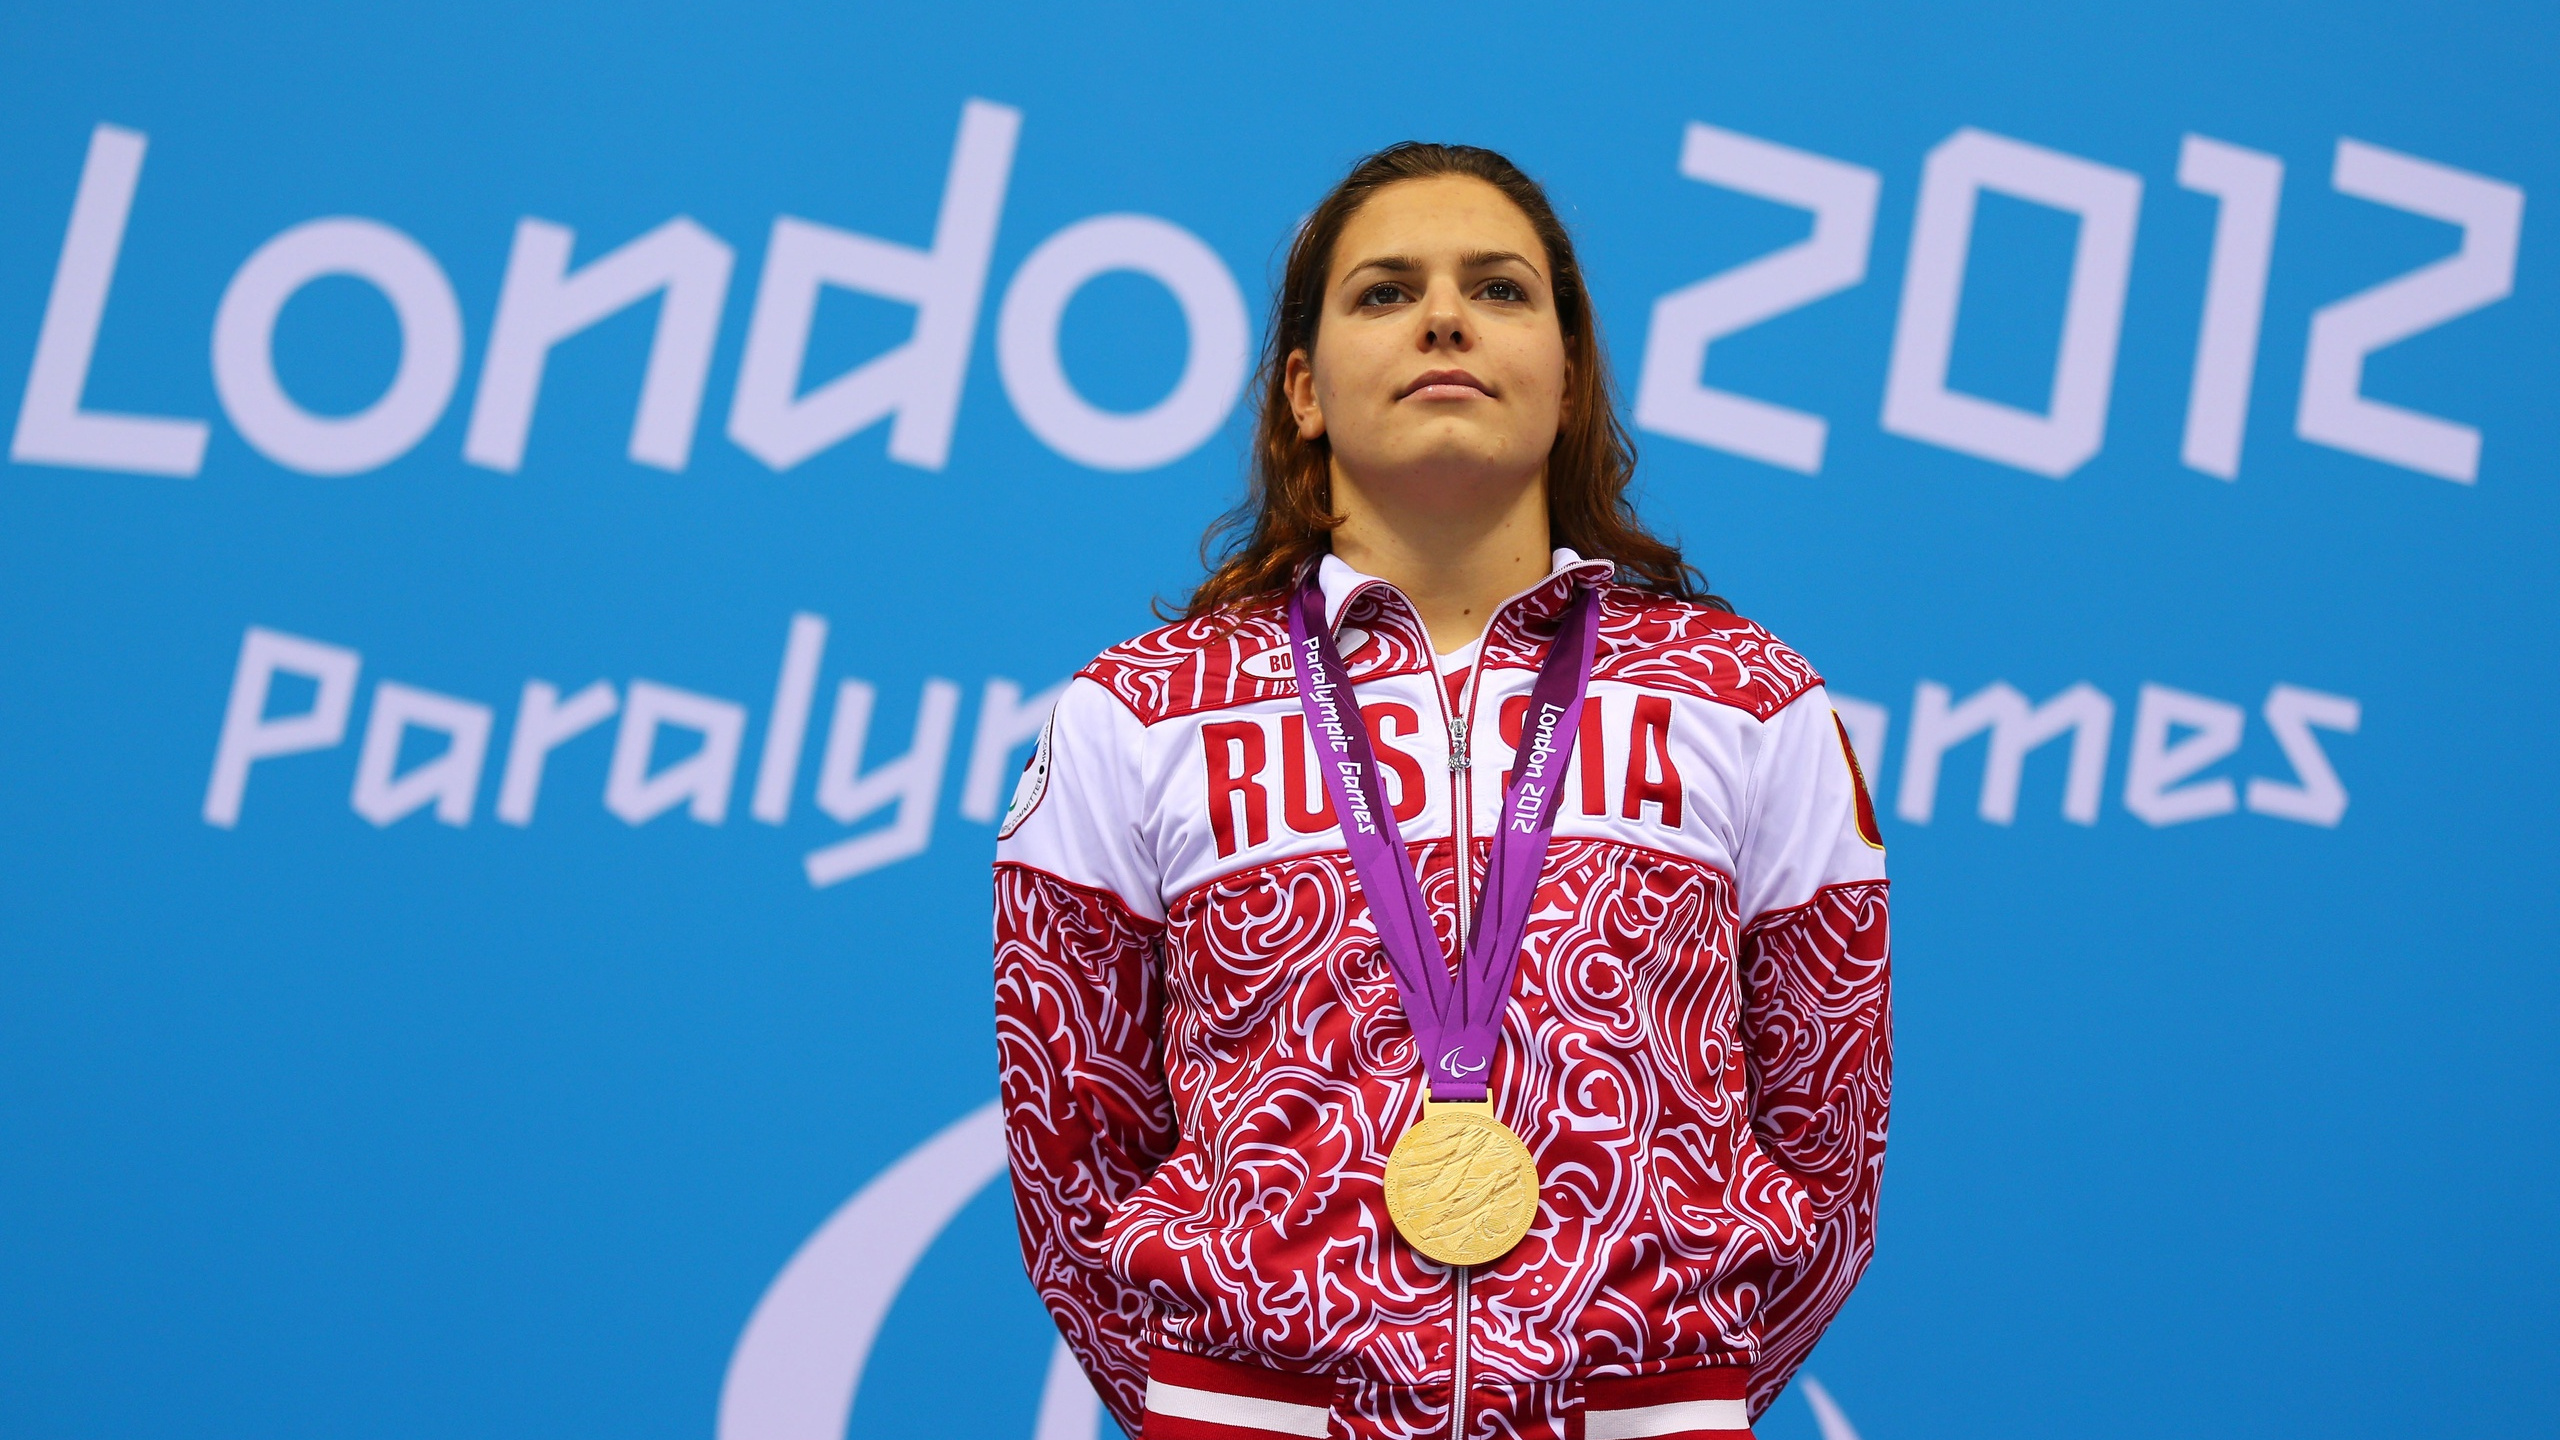 В Башкирии паралимпийская чемпионка выставила на продажу свои медали. Узнали почему